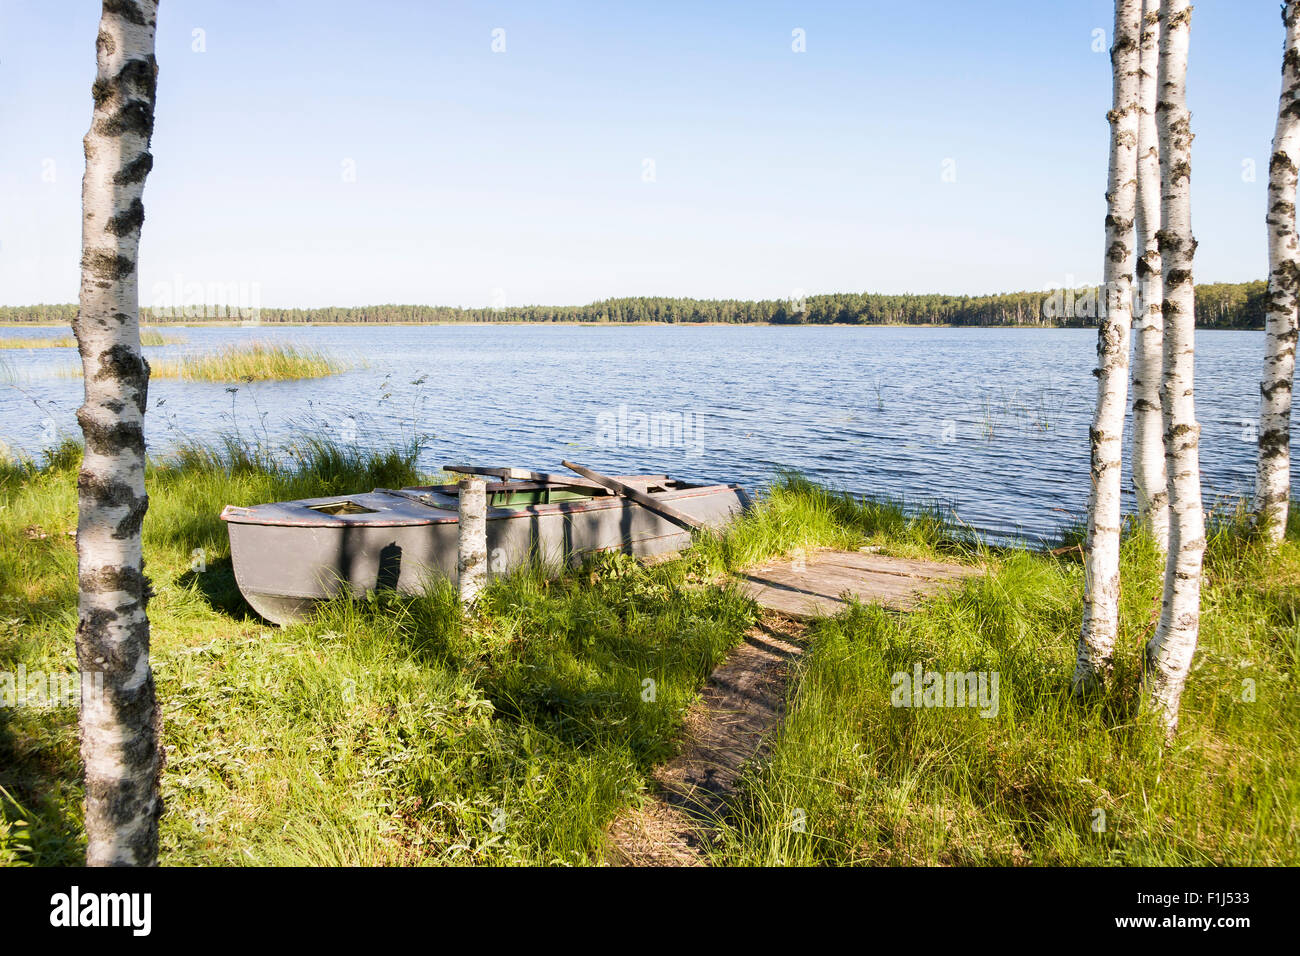 Hecha de metal viejo barco de remo en una hierba en un lago costa Foto de stock